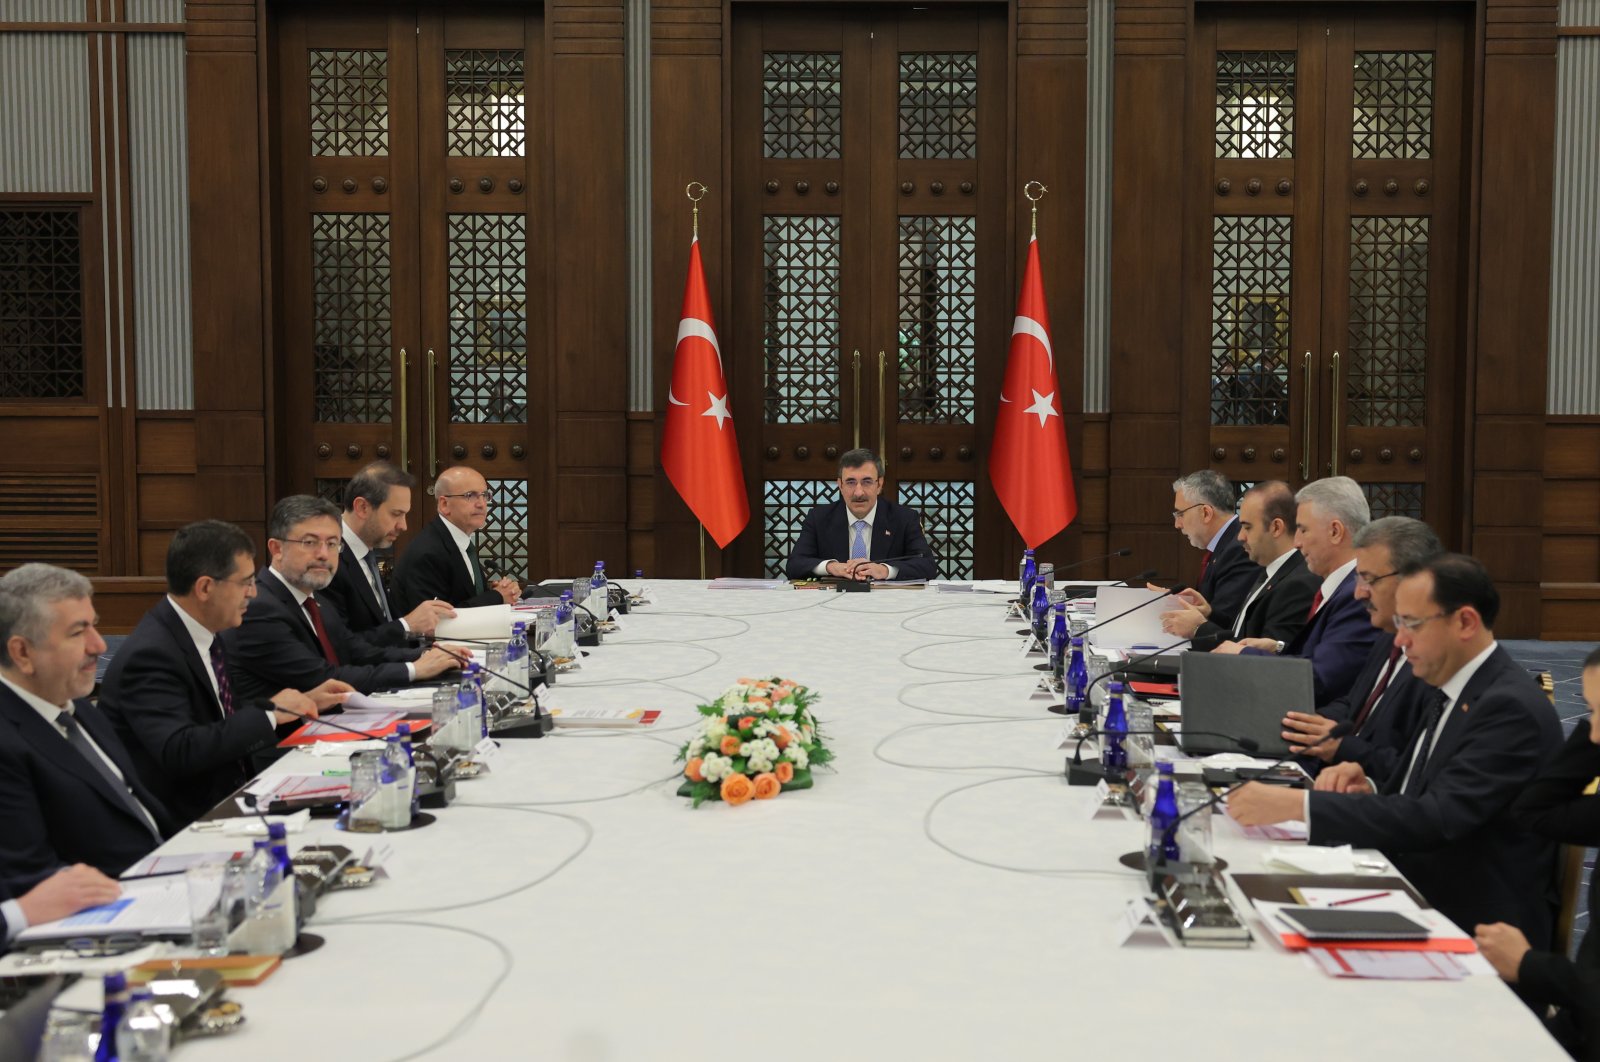 ‘Türkiye untuk melanjutkan langkah-langkah dalam prinsip pasar bebas’